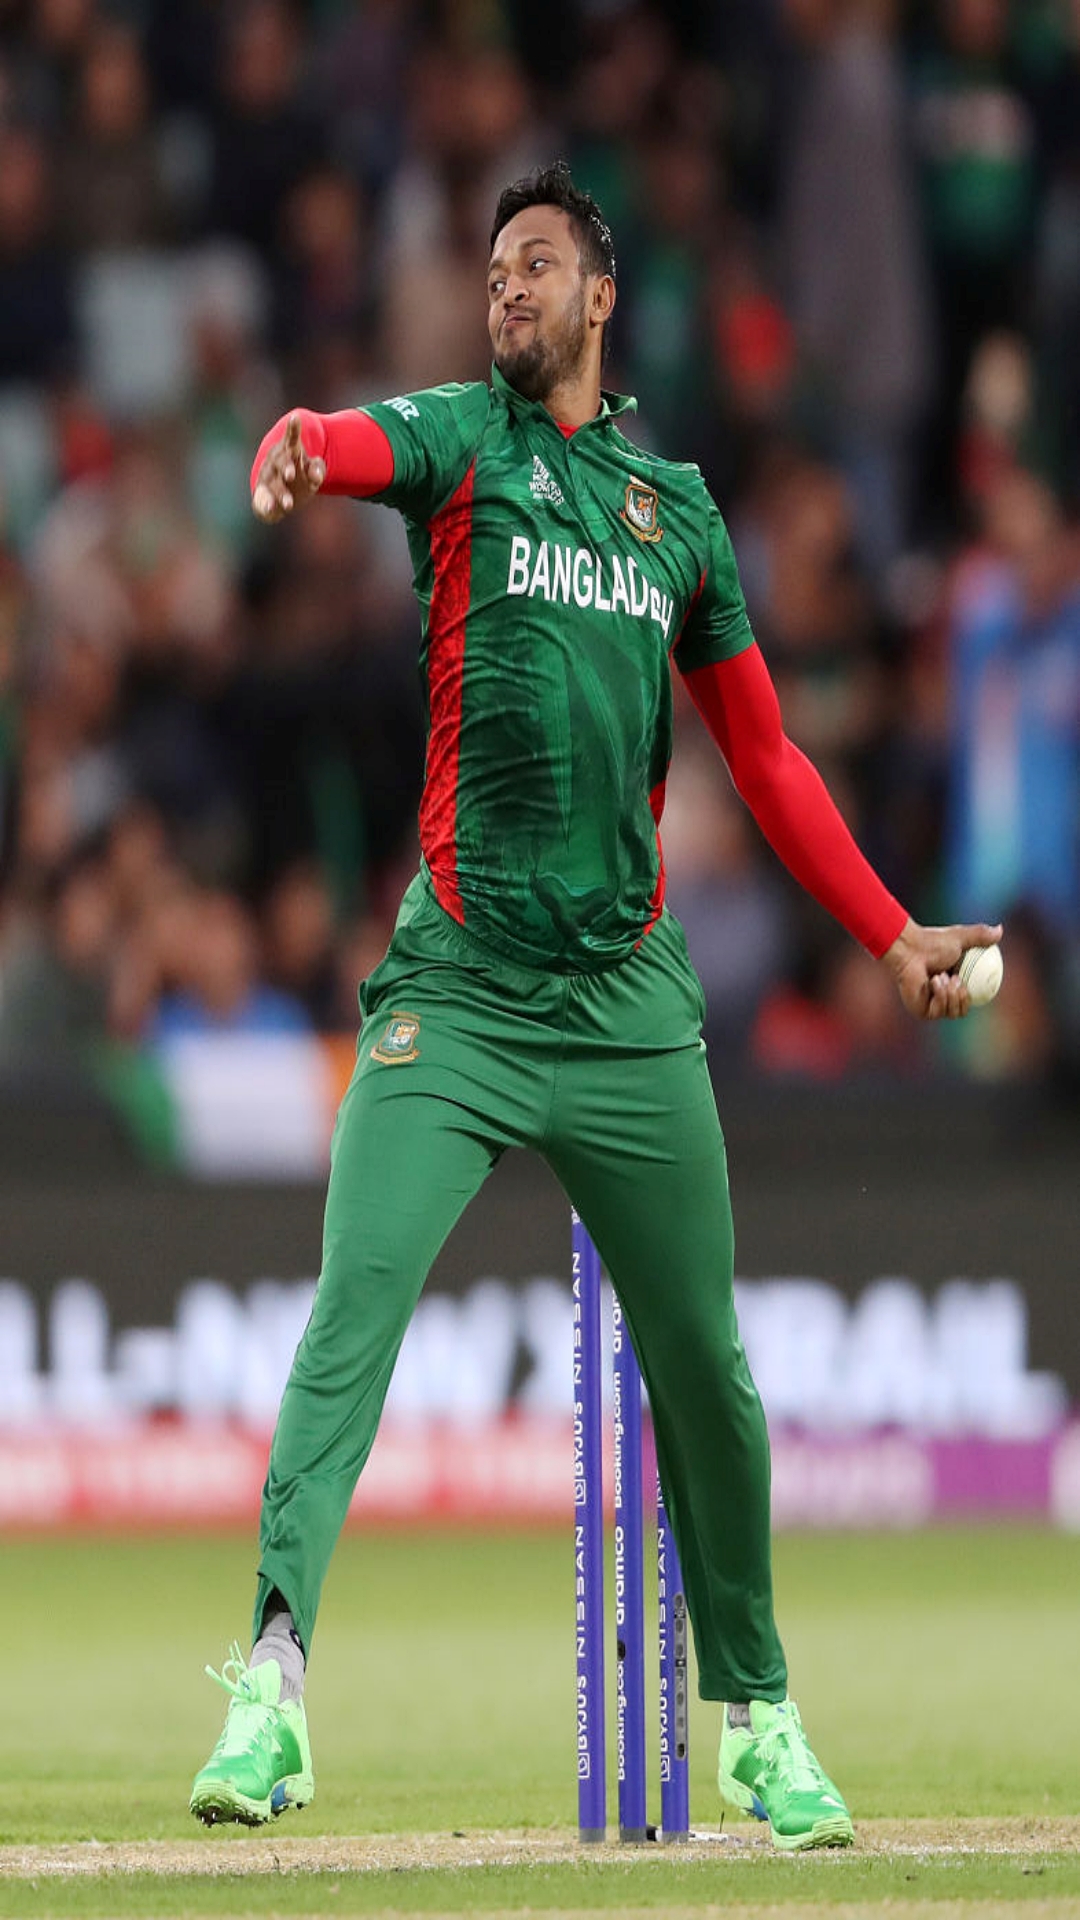 भारत के खिलाफ वनडे में सर्वाधिक विकेट लेने वाले बांग्लादेशी गेंदबाज, टॉप 5 की लिस्ट में हुआ बदलाव